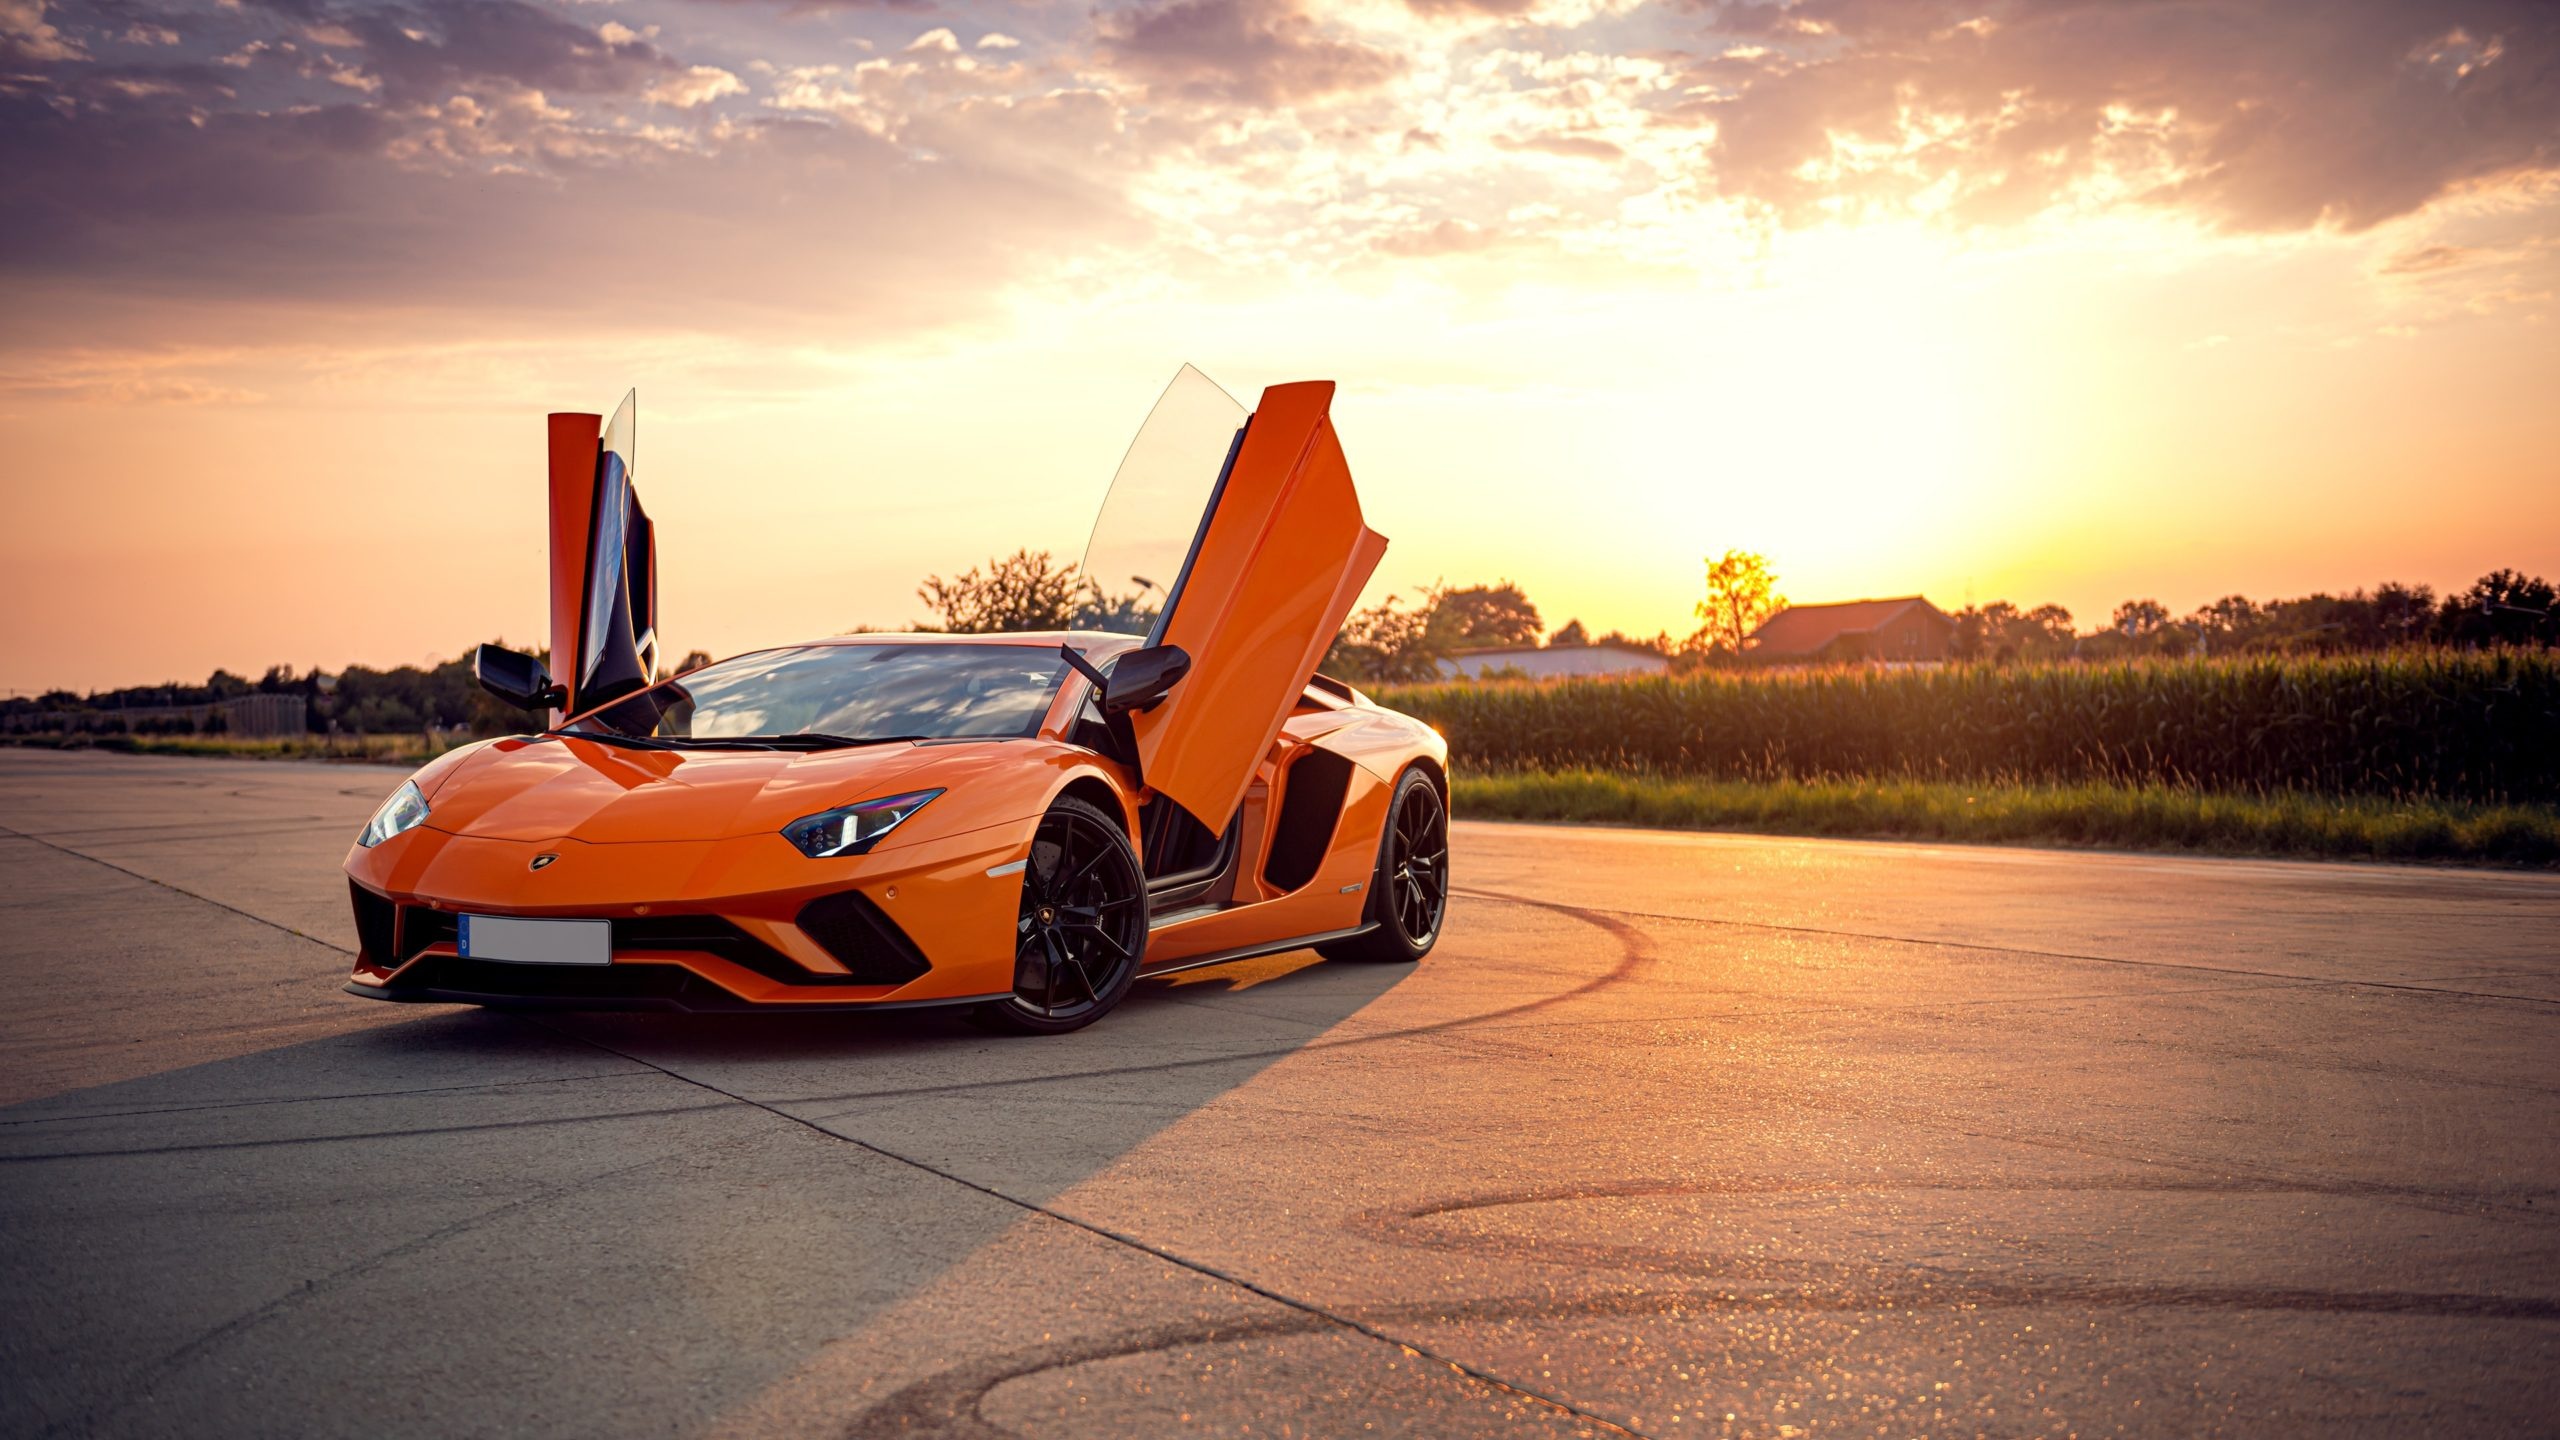 Lamborghini Aventador, Exquisite craftsmanship, Mind-blowing details, Unforgettable beauty, 2560x1440 HD Desktop